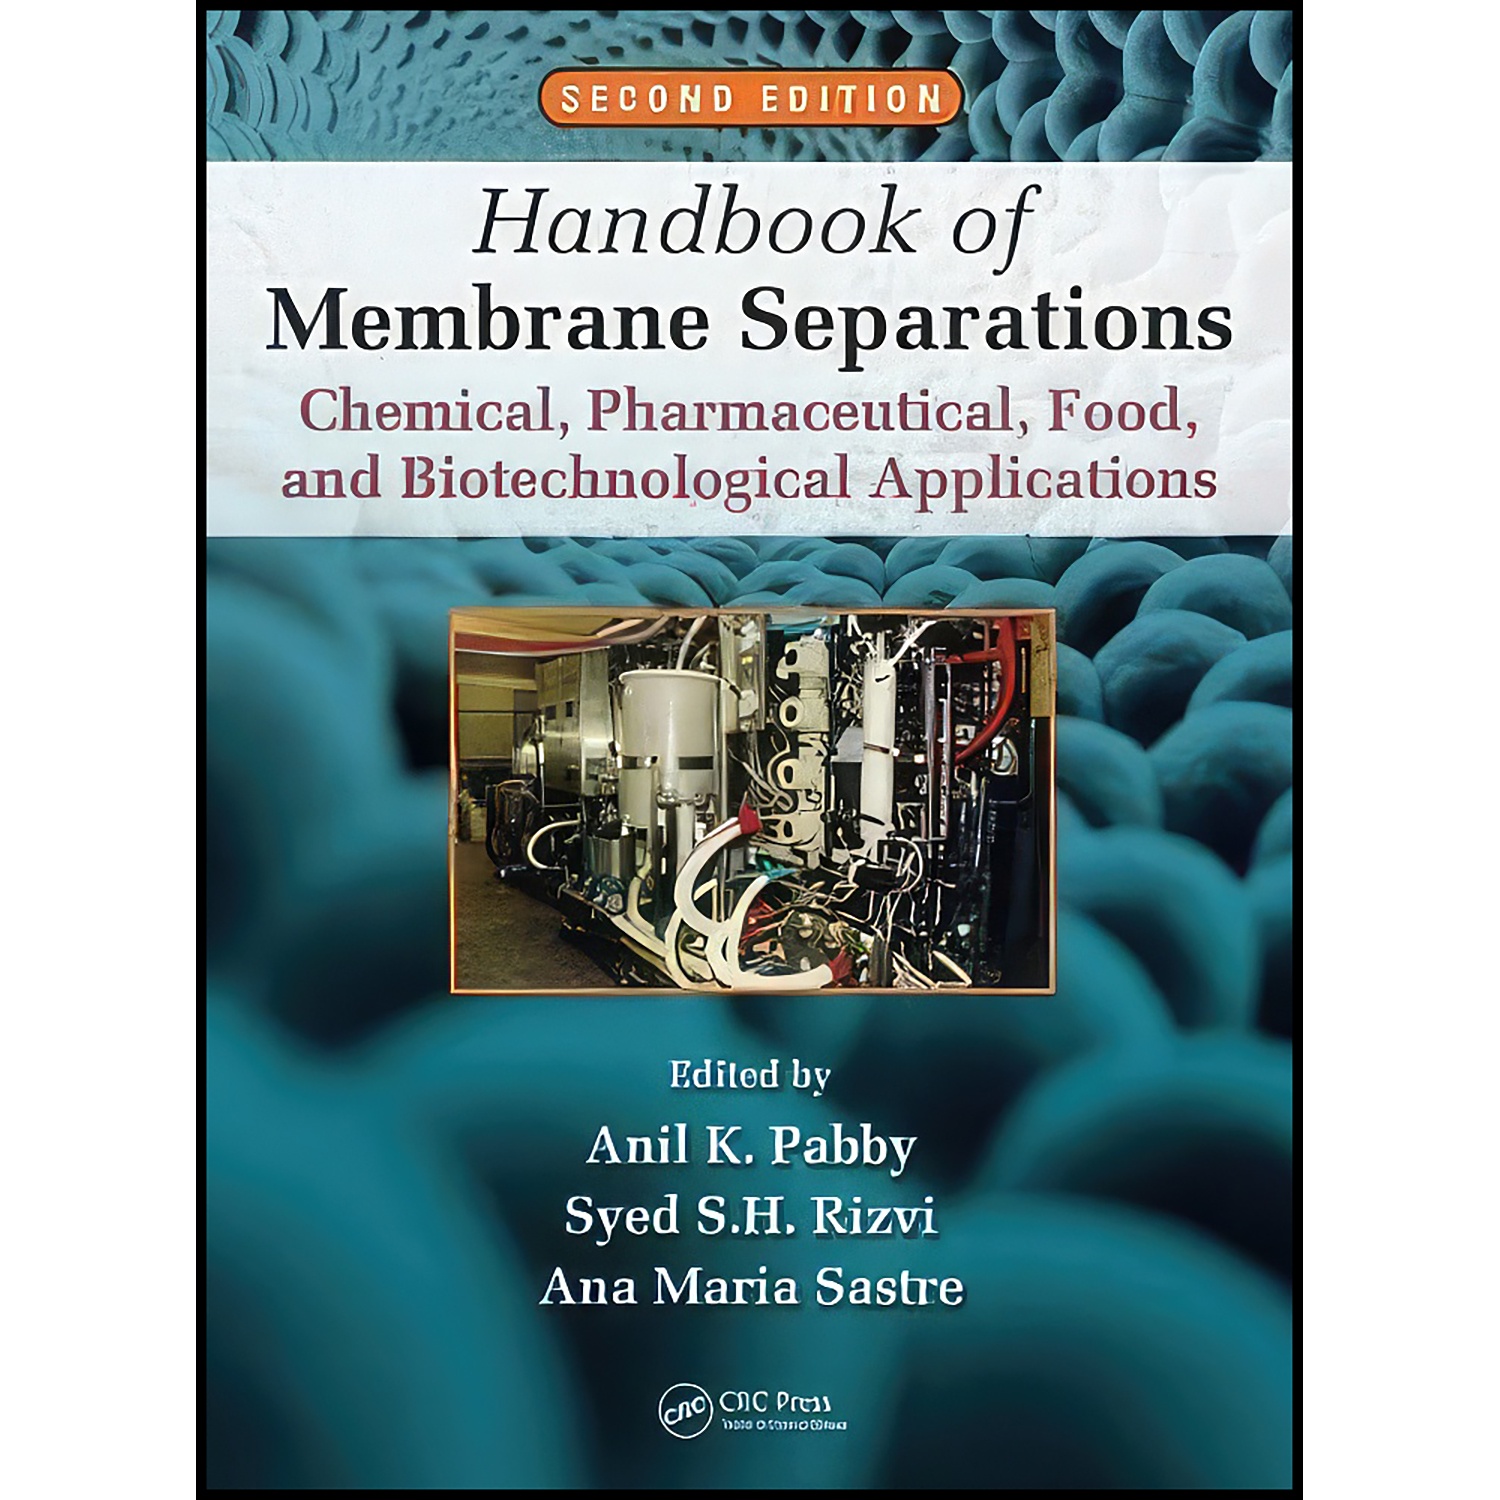 کتاب Handbook of Membrane Separations اثر جمعي از نويسندگان انتشارات CRC Press